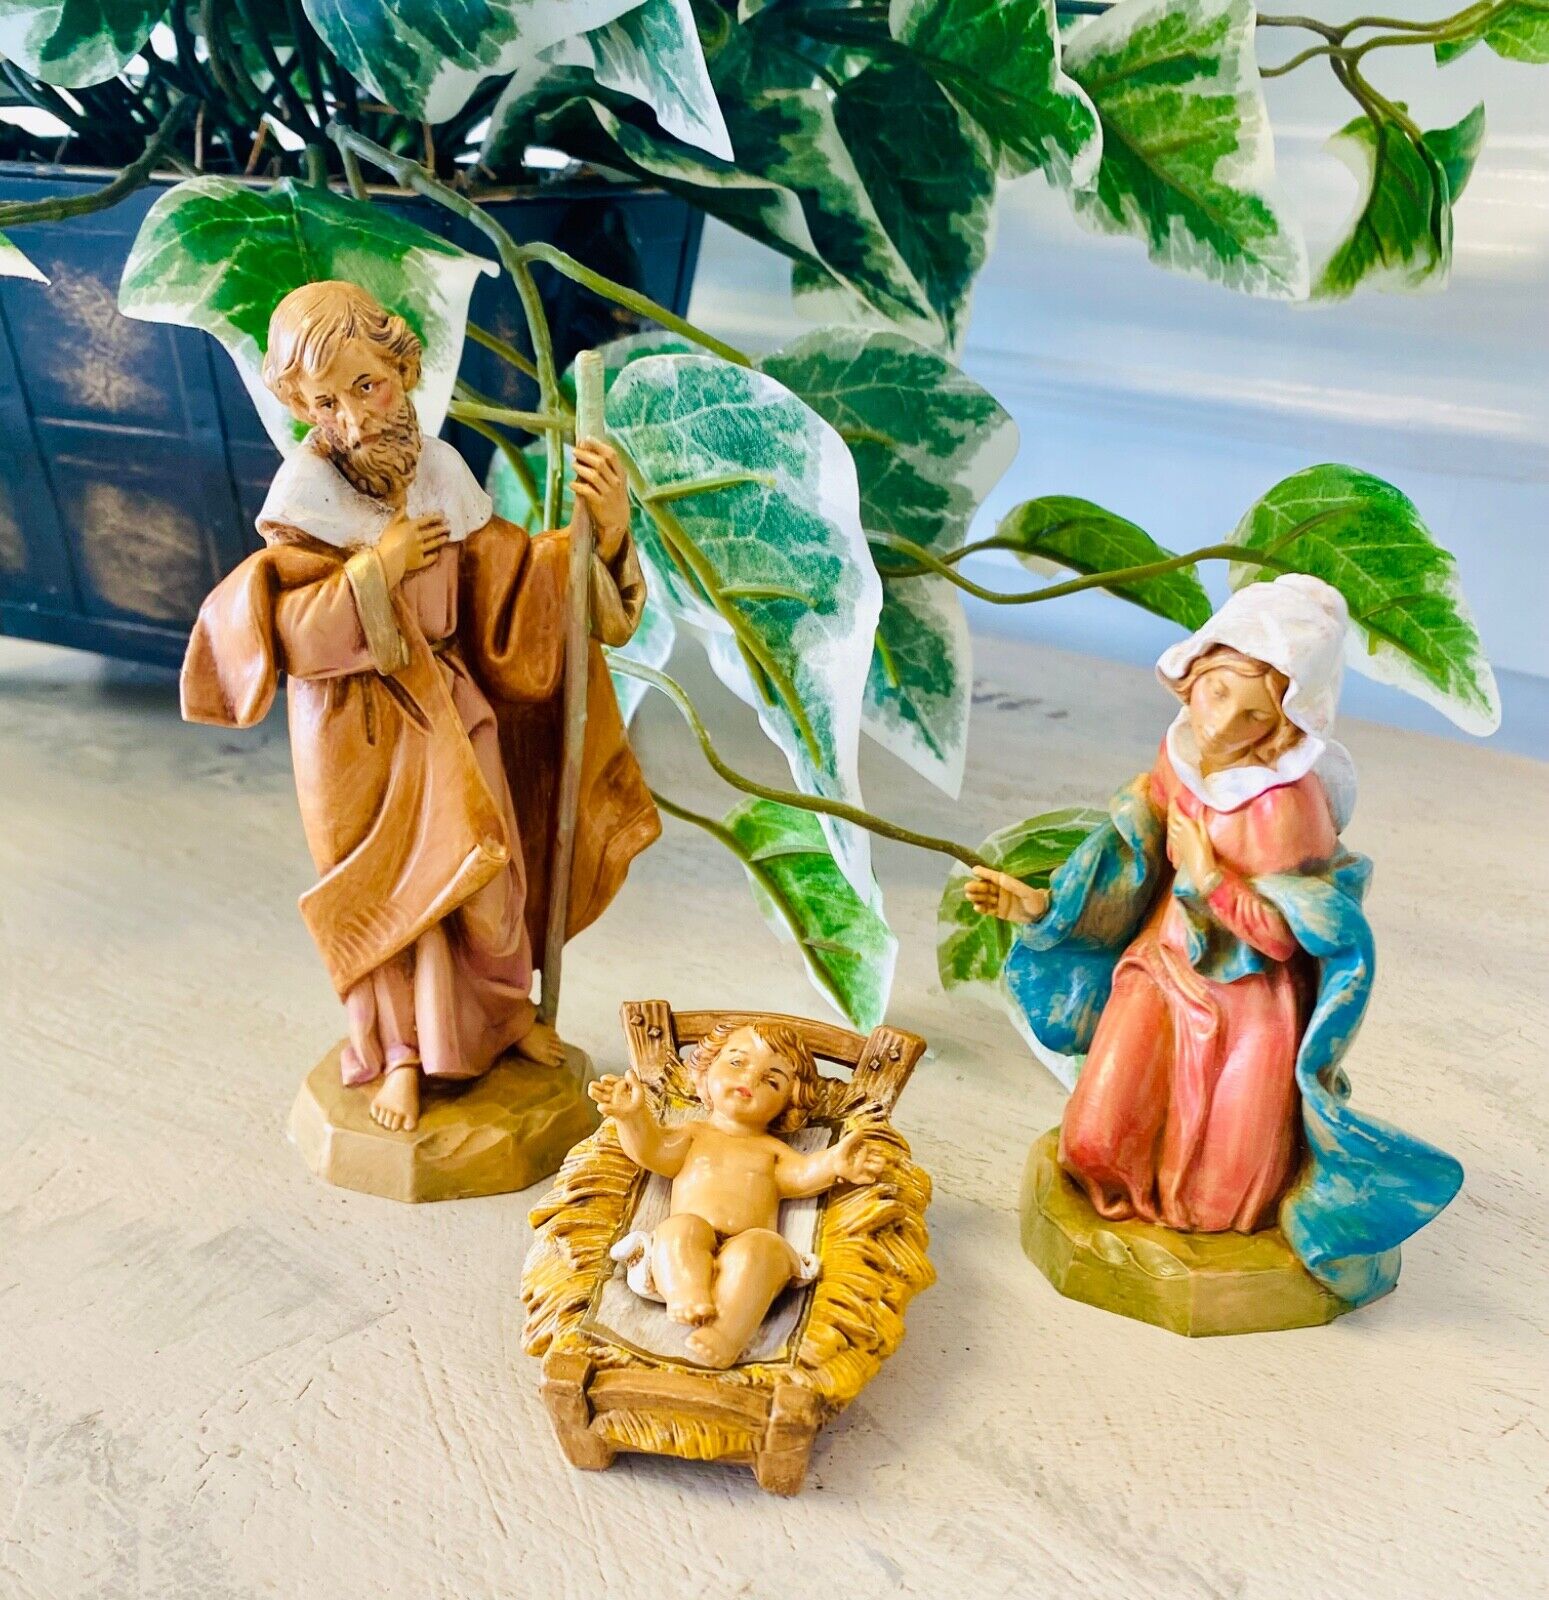 Fontanini 5” Nativity Figures The Holy Family 1991 Mary Joseph Jesus